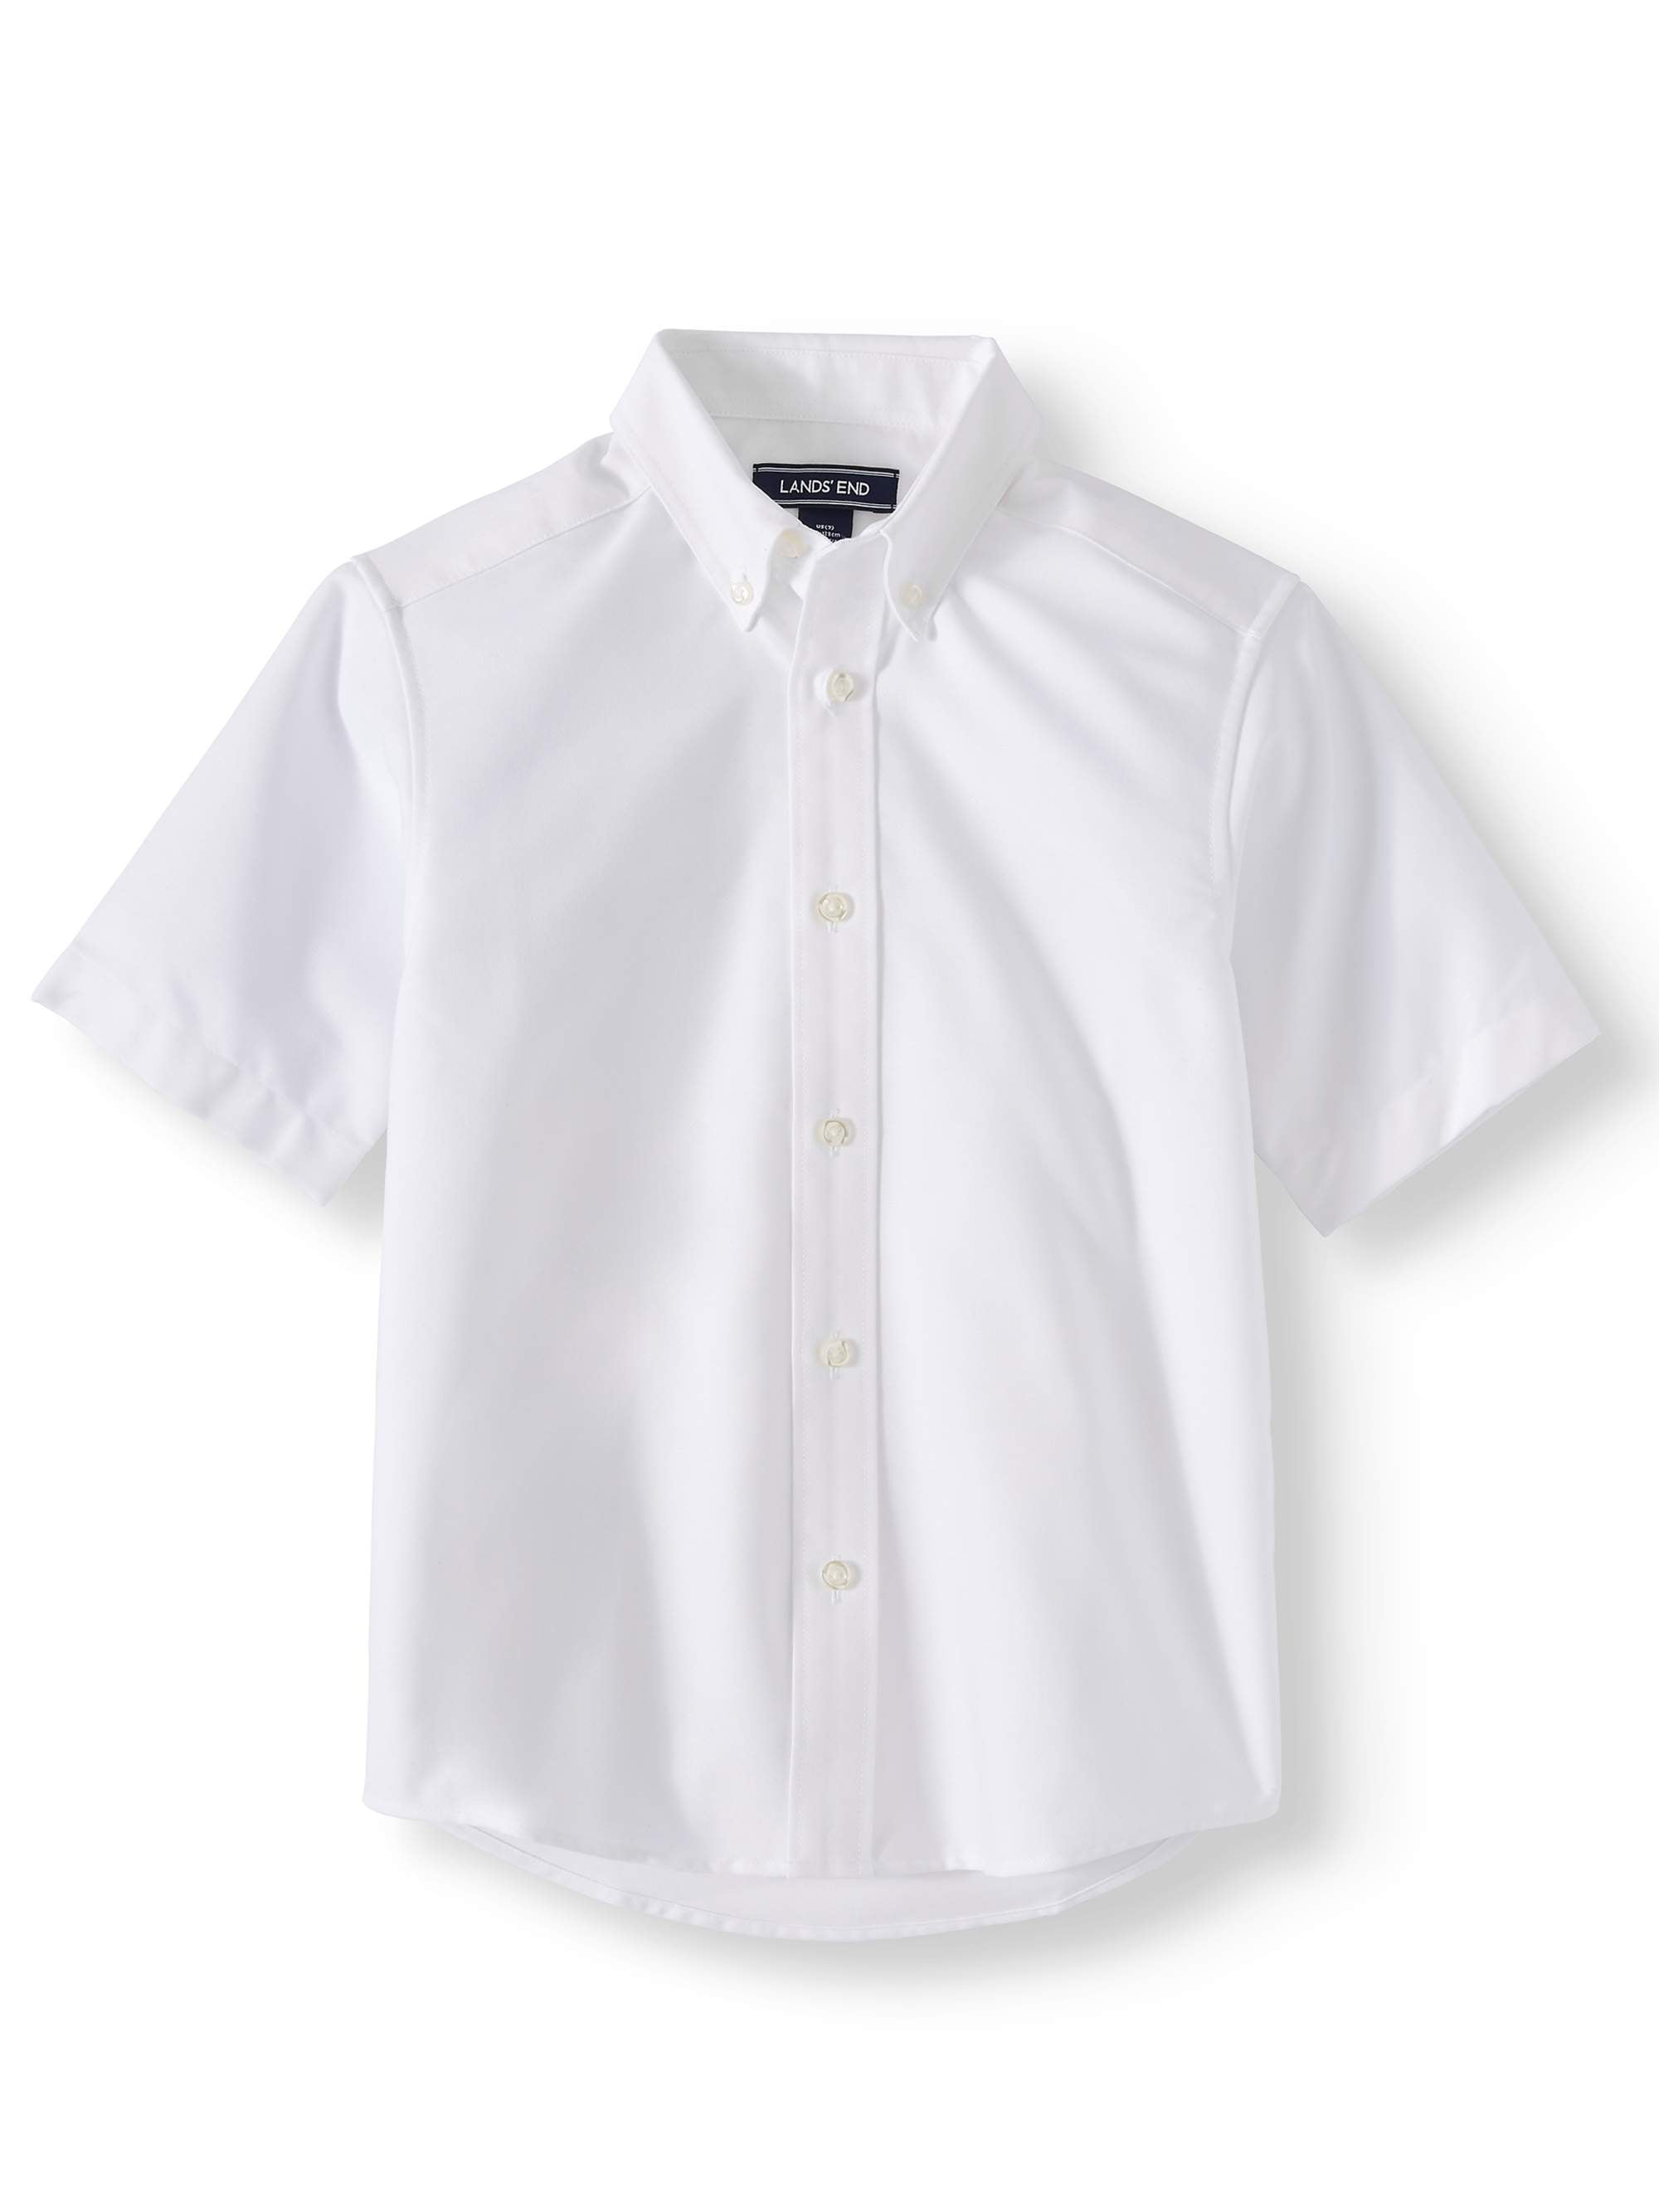 Lands End School Uniform Girls Short Sleeve Peter Pan Collar Broadcloth Shirt